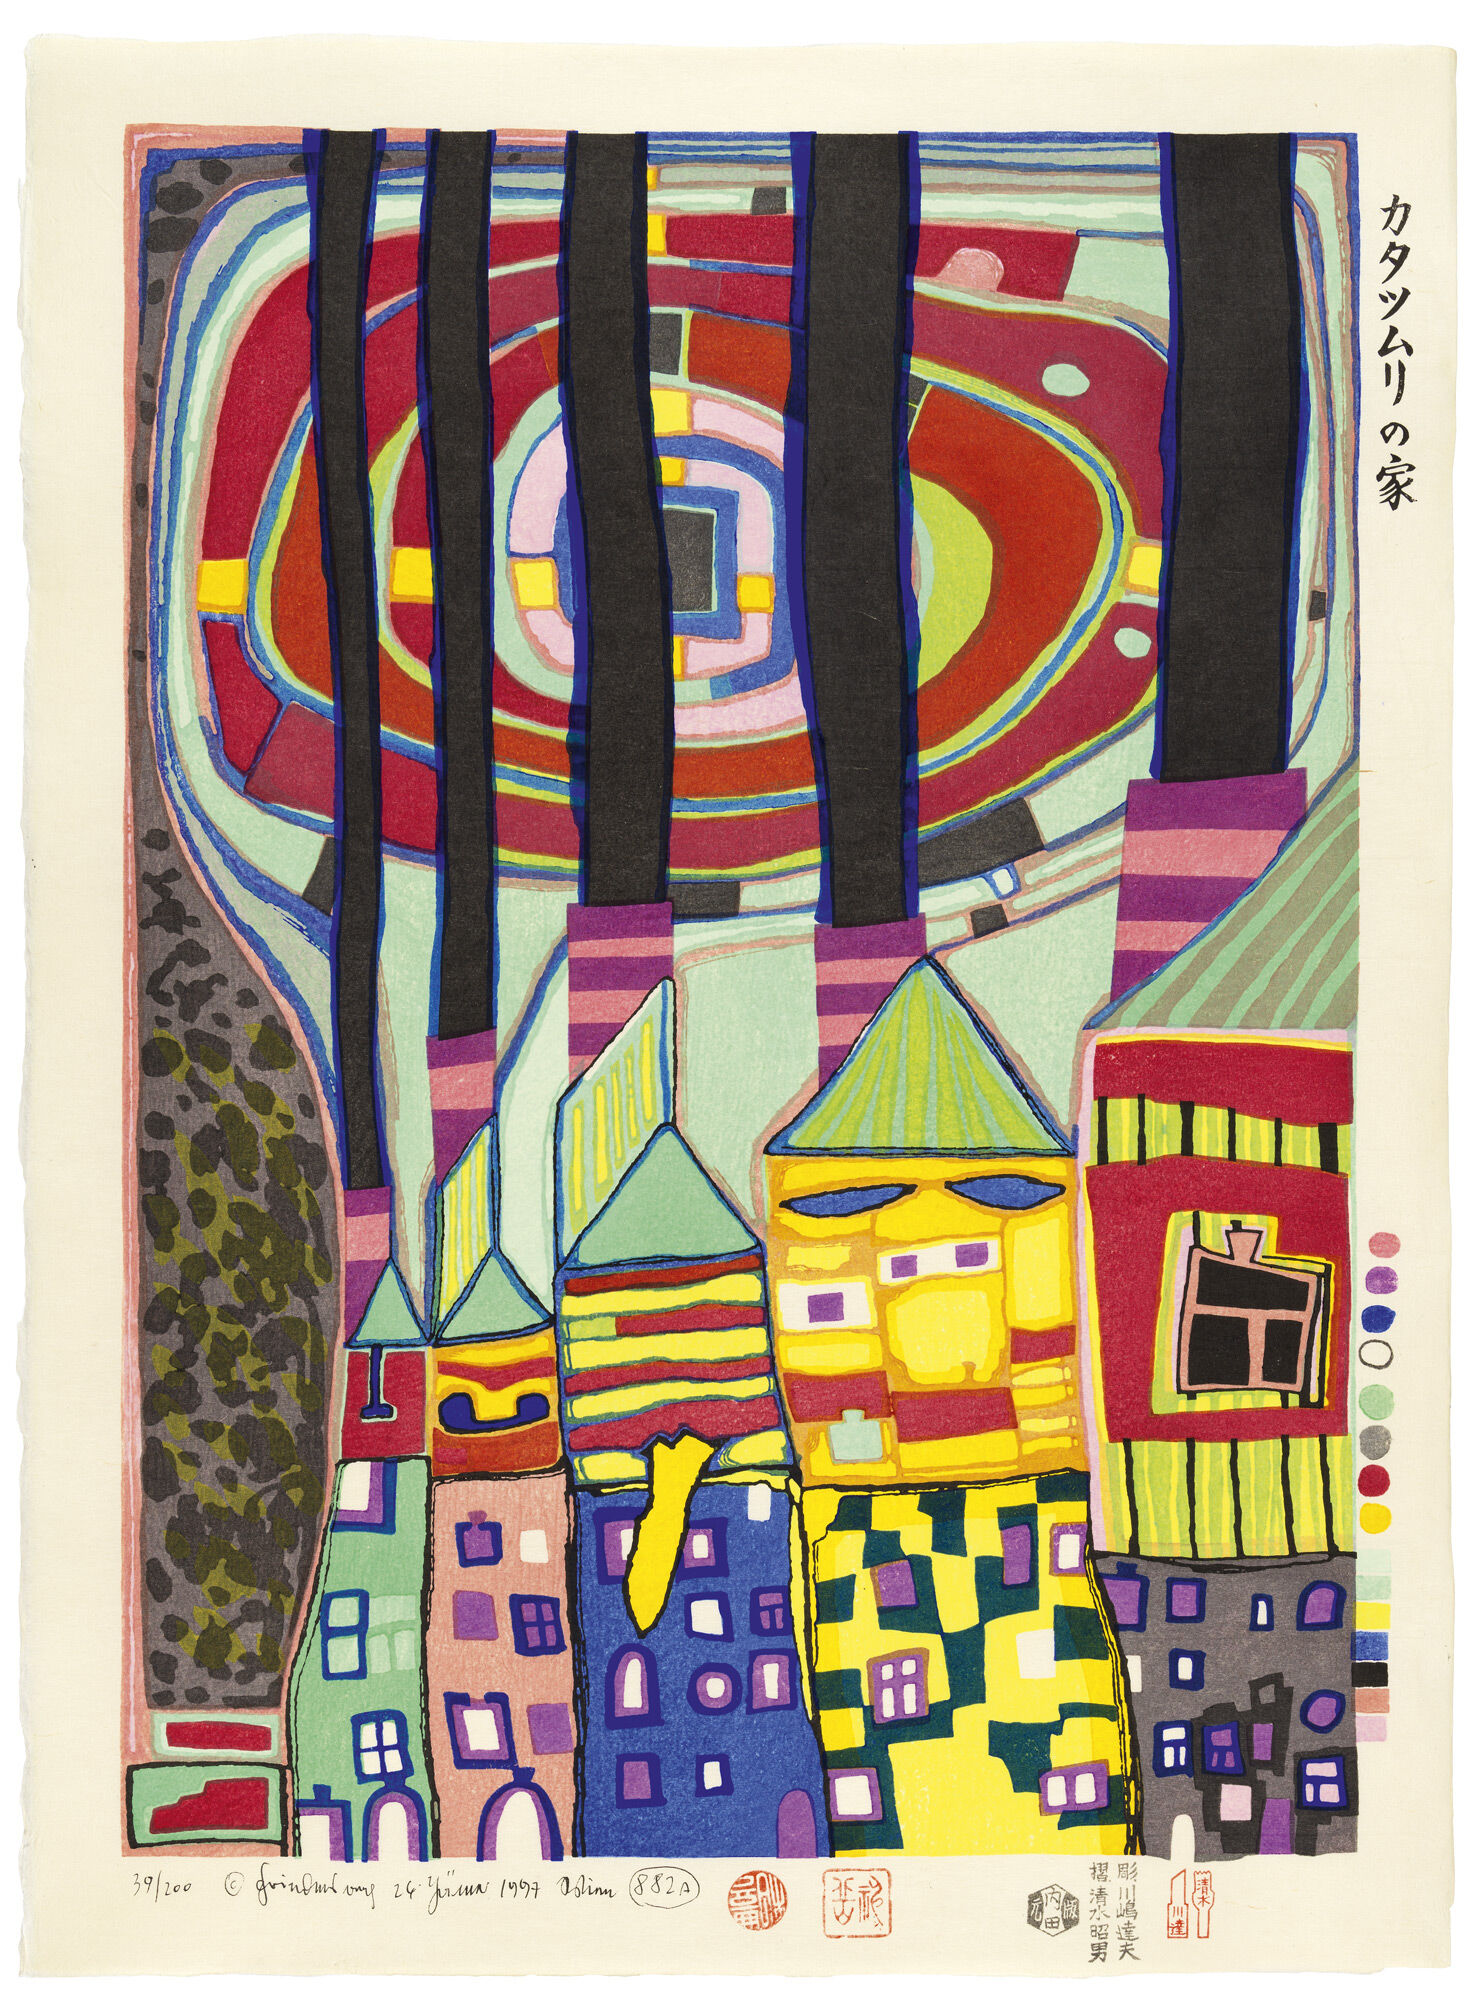 882A SNAIL HOUSES WITH BLACK SMOKE, SCHNECKENHÄUSER MIT SCHWARZEM RAUCH (1996) (Japanese woodblock print) by Friedensreich Hundertwasser